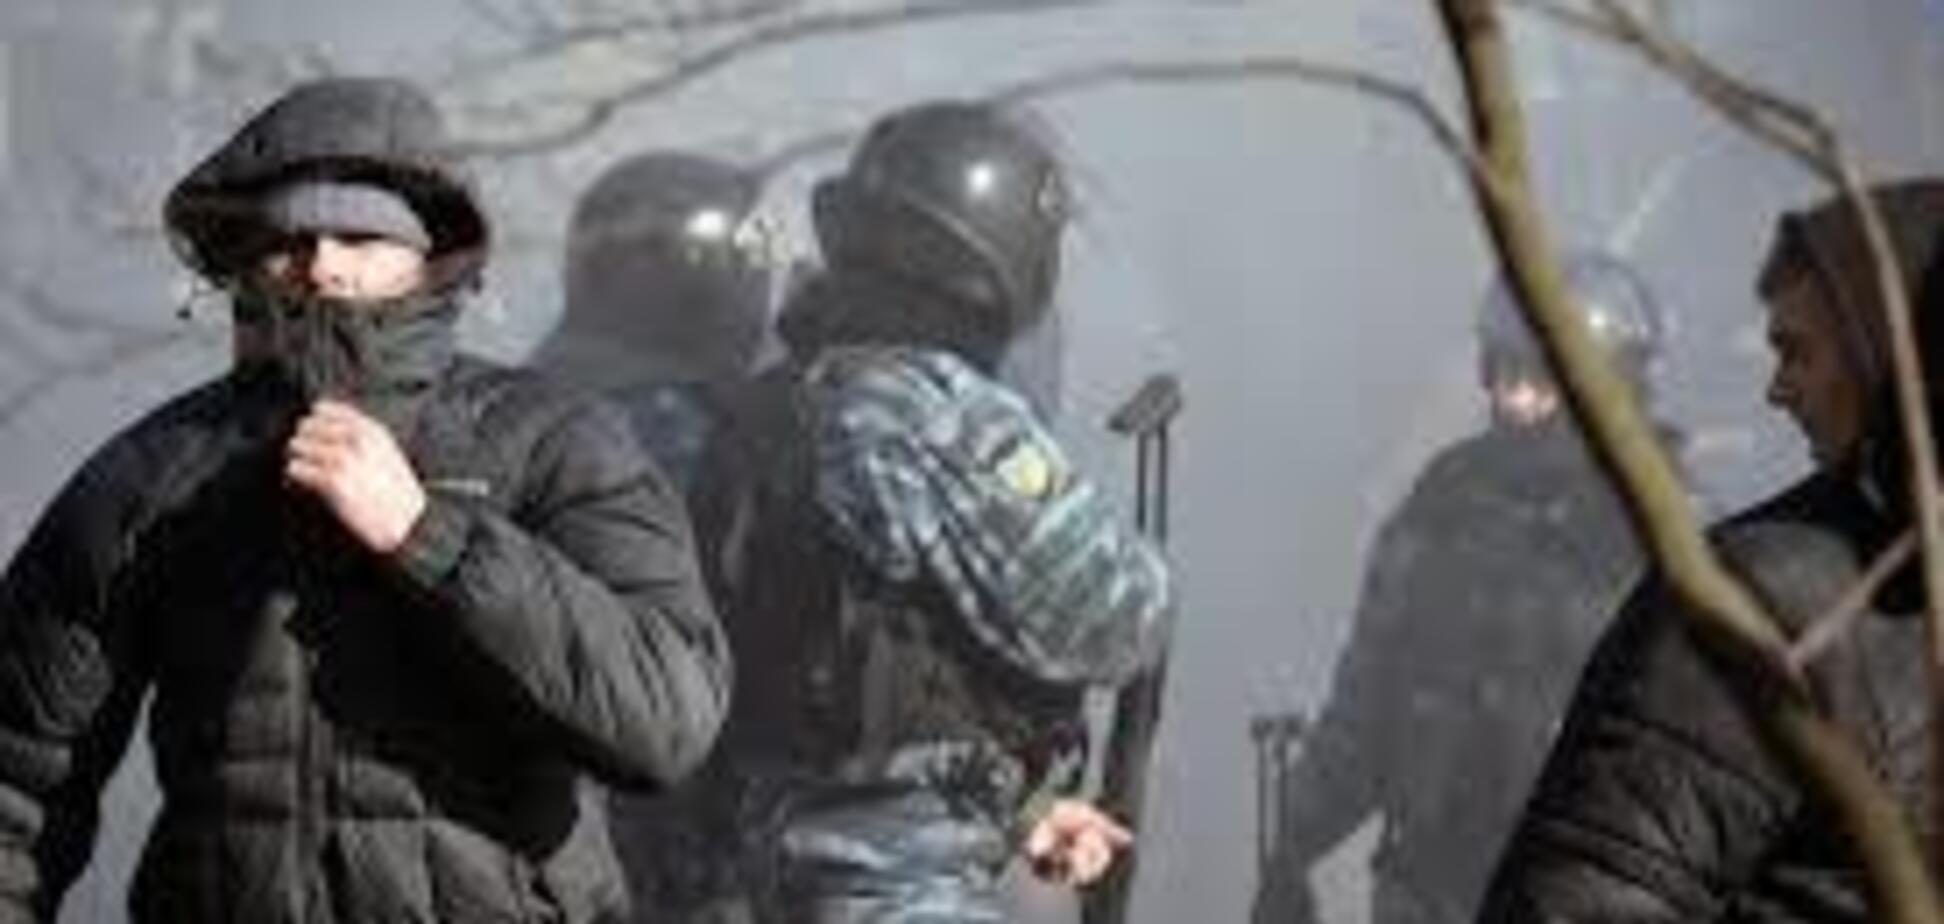 Наградили за расстрел Майдана: оккупанты провели циничный 'праздник' с 'Беркутом' в Крыму